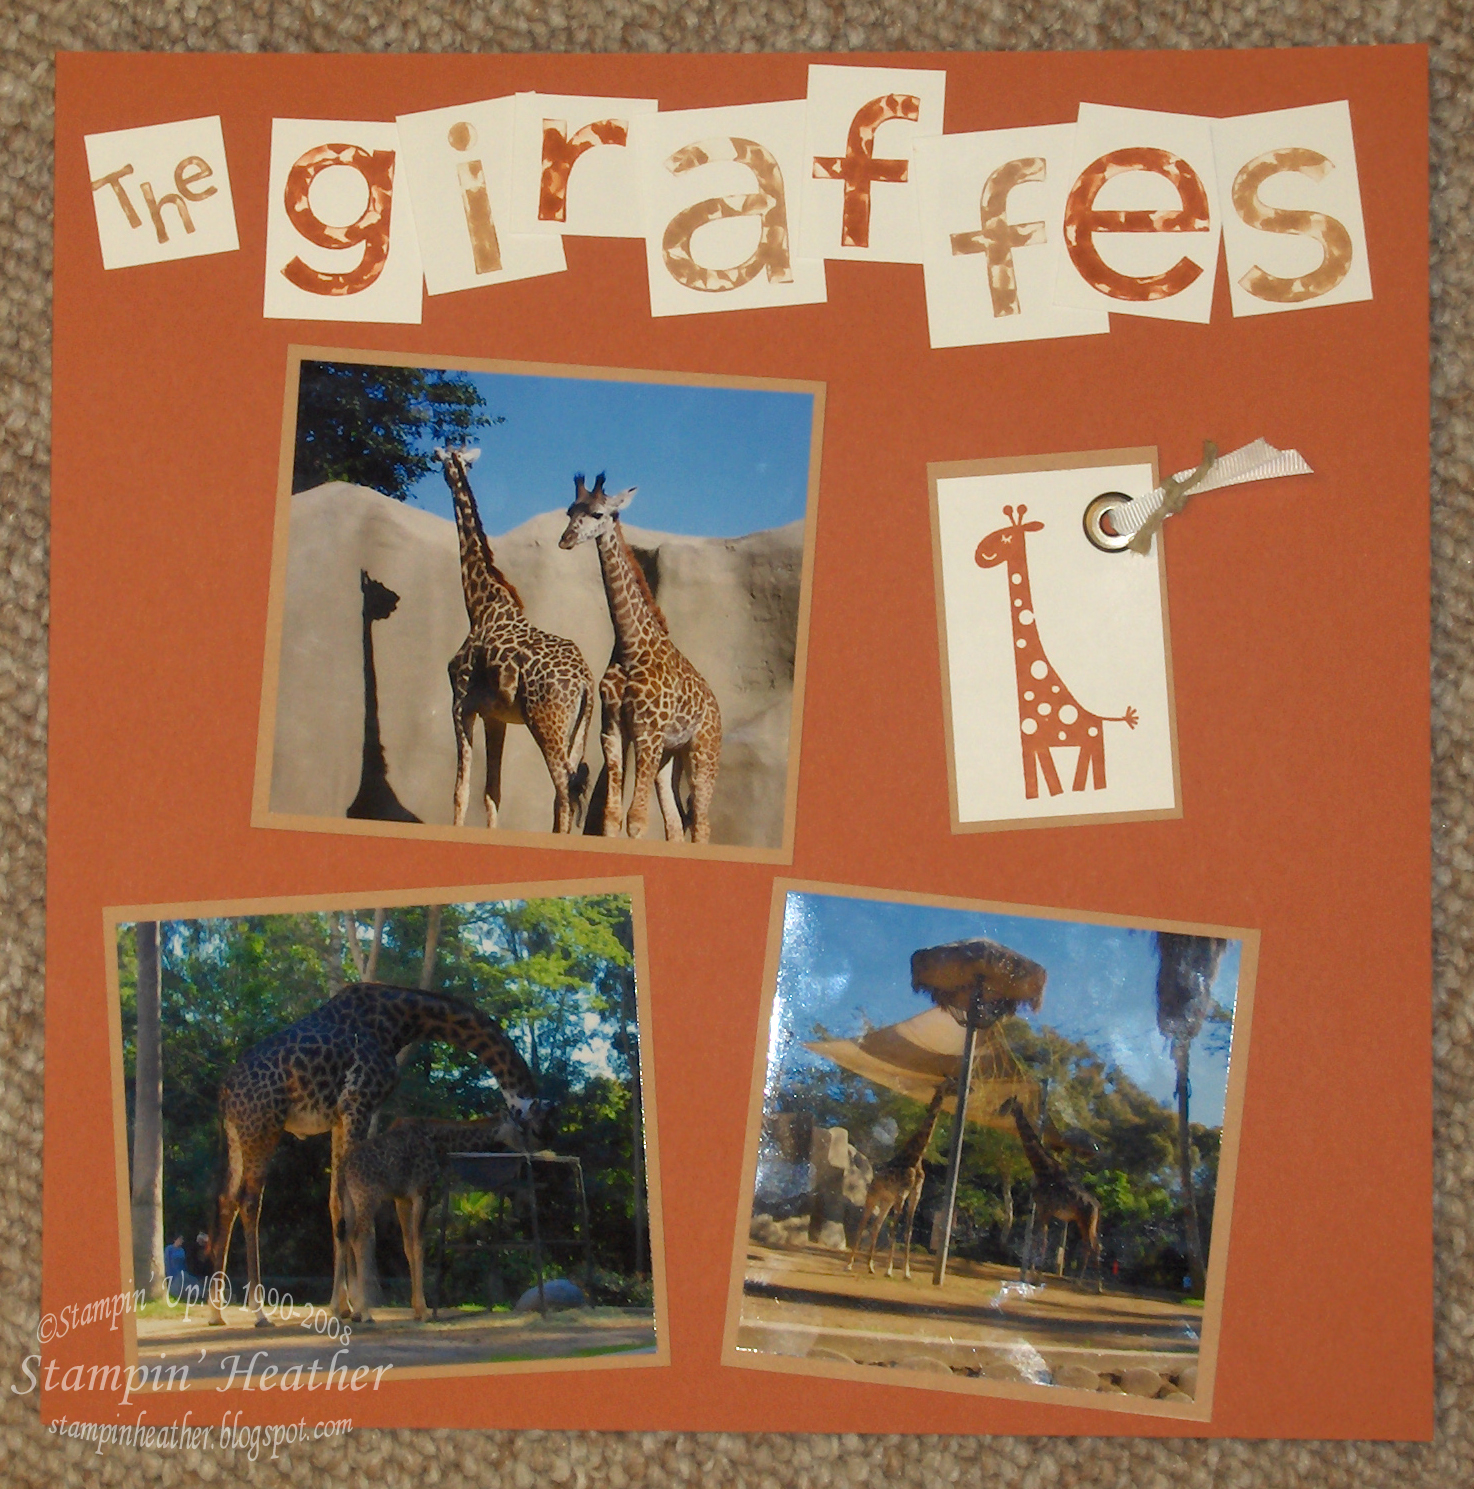 [The+Giraffes.jpg]